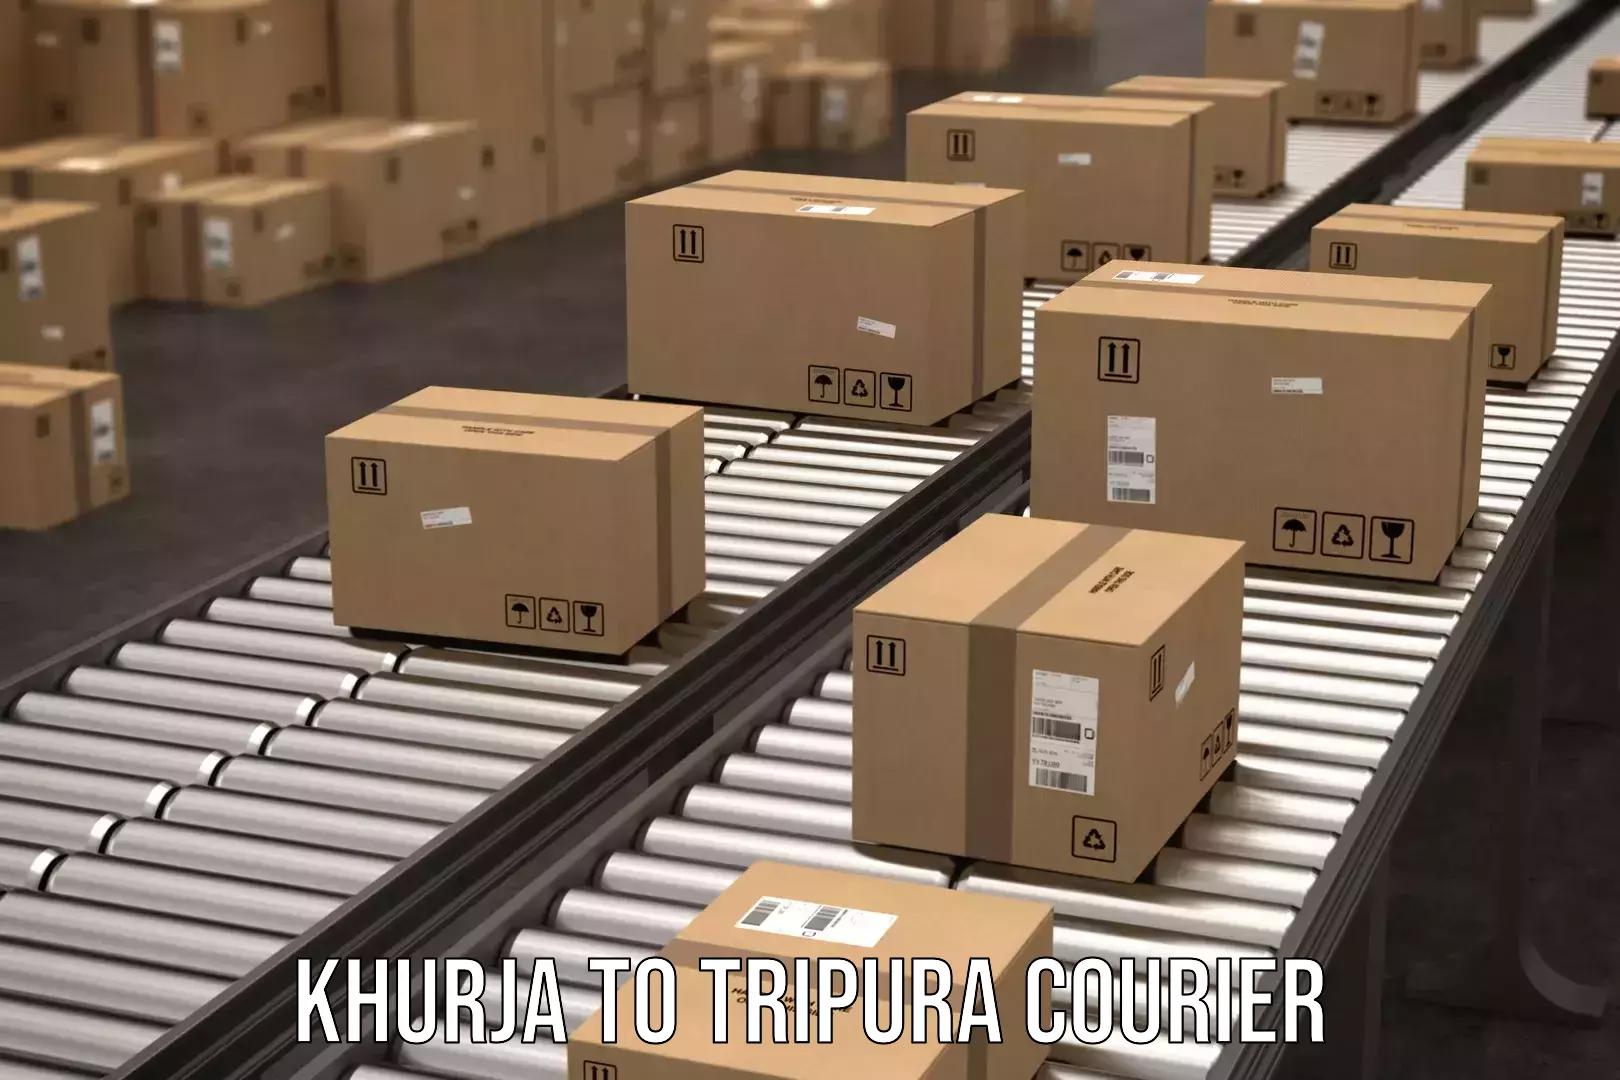 Global shipping networks Khurja to Tripura